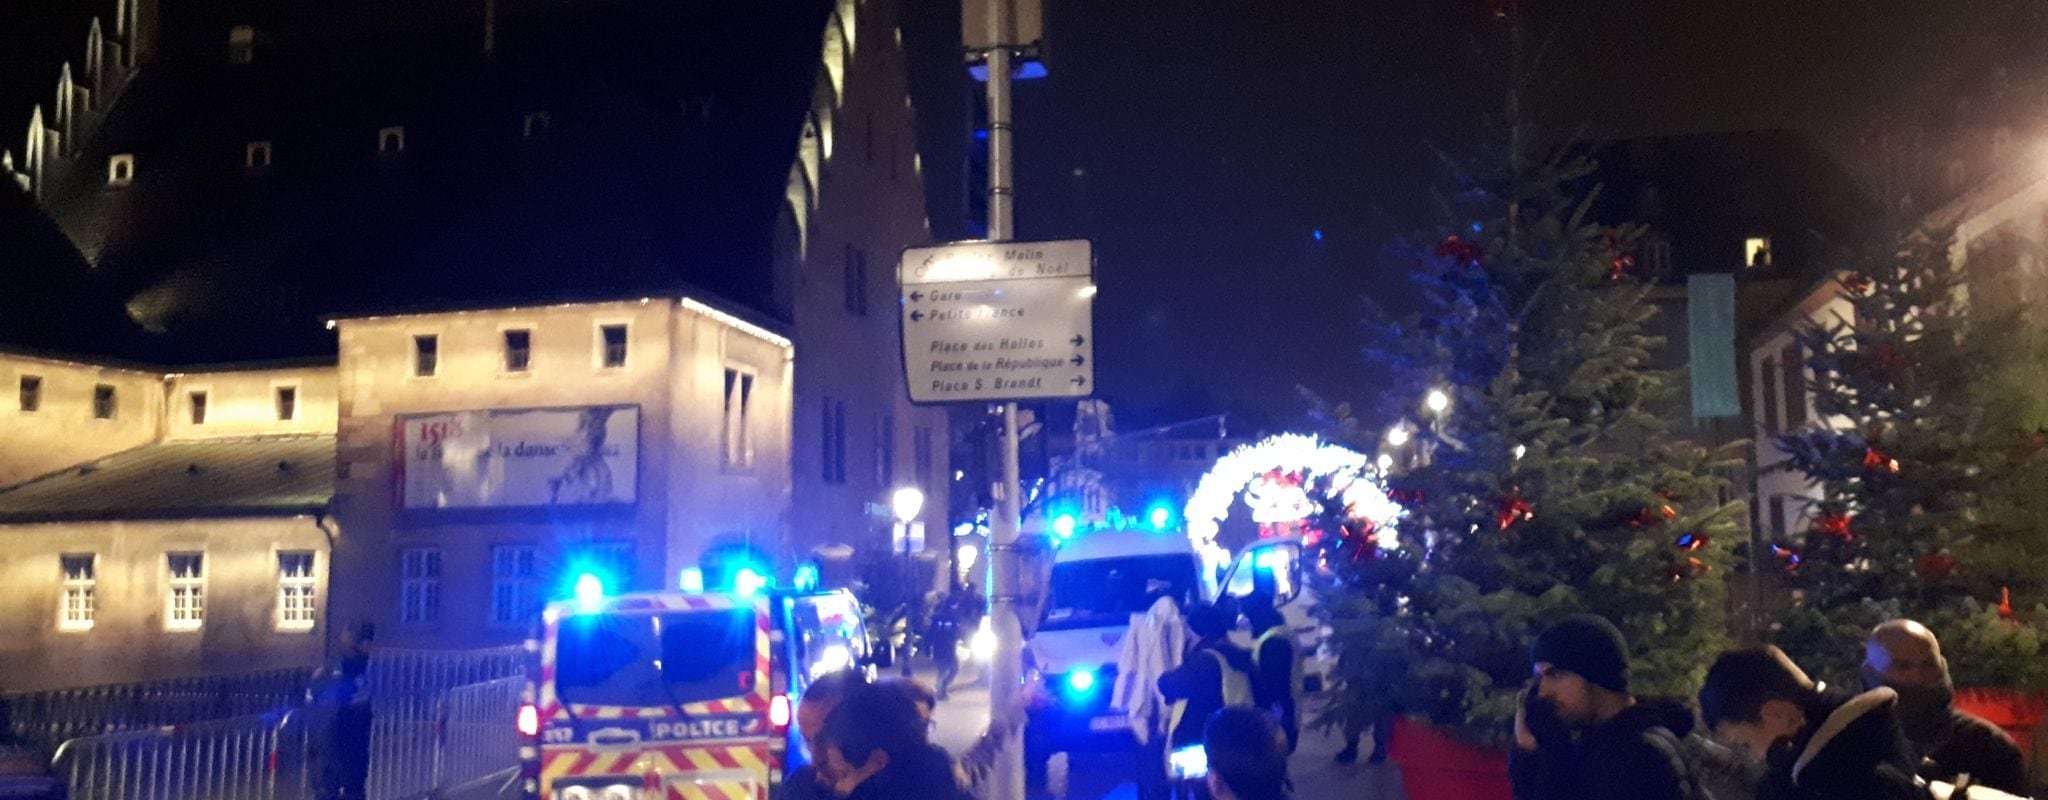 Coups de feu dans le centre-ville de Strasbourg, trois morts et treize blessés